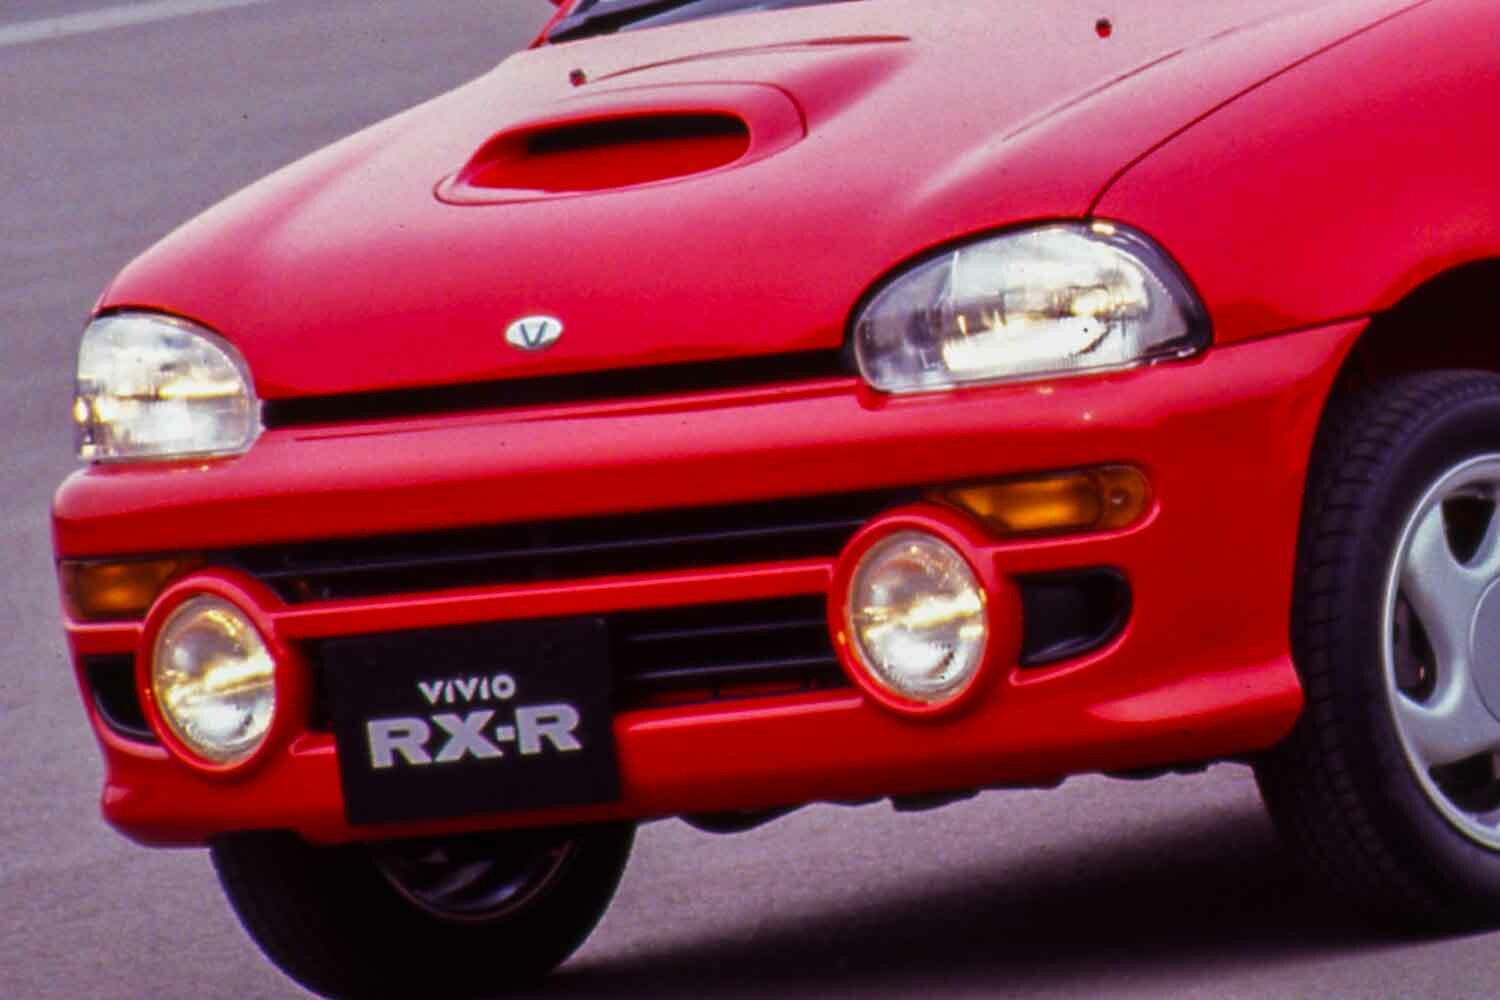 軽自動車でサファリラリークラス優勝したのはスバル「ヴィヴィオRX-R」だけ！「小さな巨人」の表に出せない逸話とは